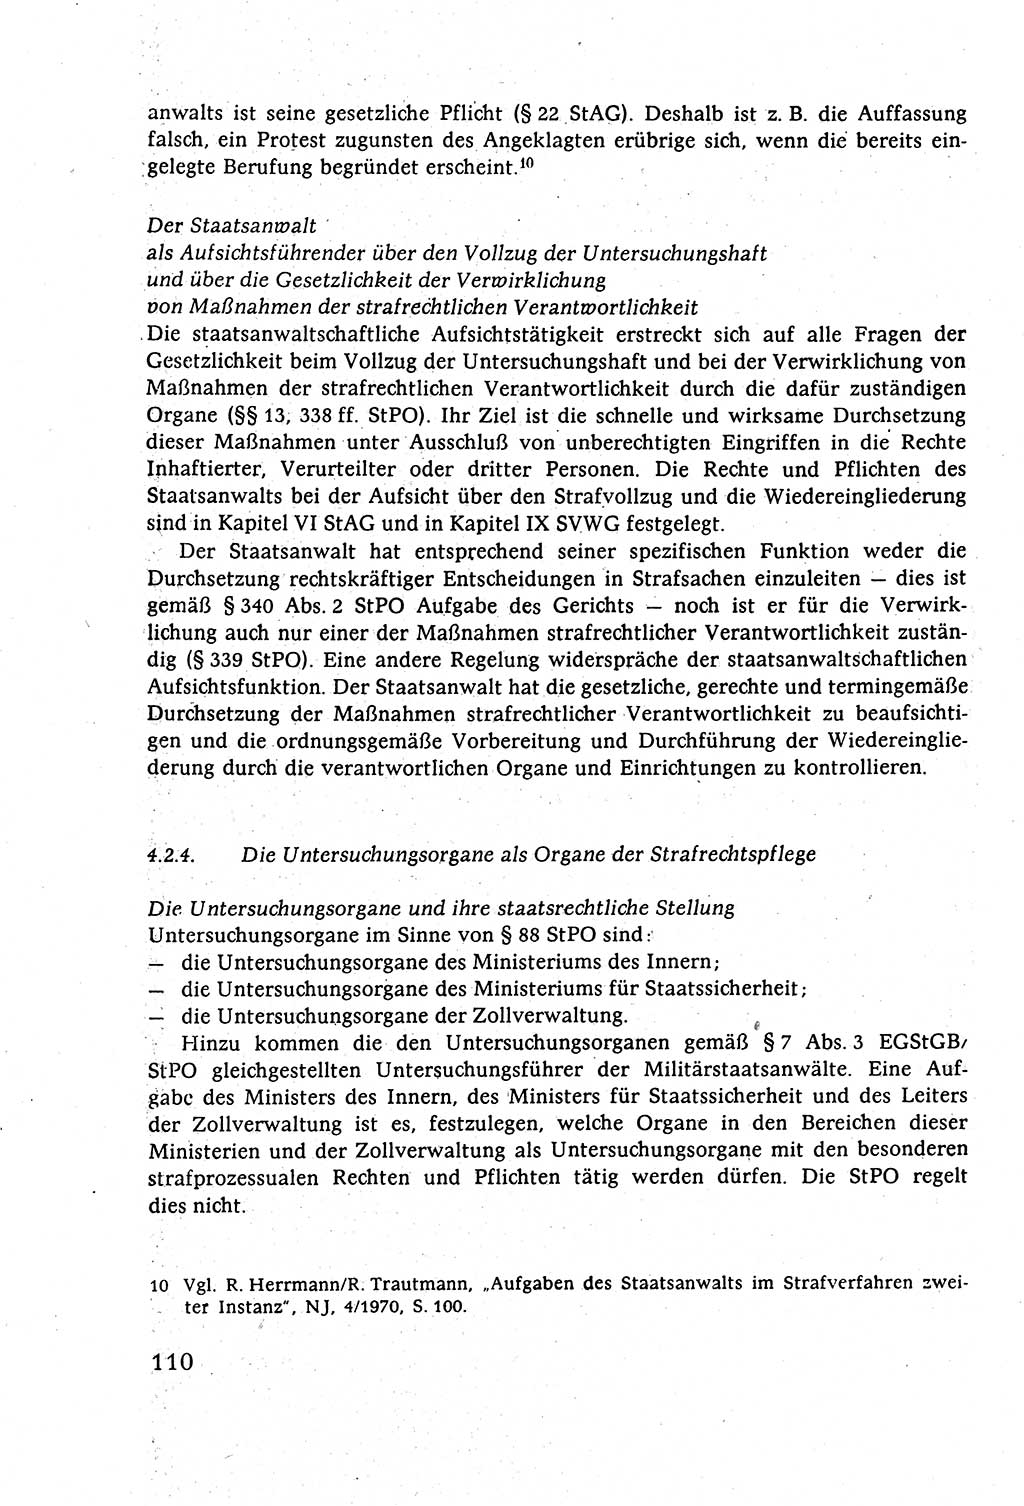 Strafverfahrensrecht [Deutsche Demokratische Republik (DDR)], Lehrbuch 1977, Seite 110 (Strafverf.-R. DDR Lb. 1977, S. 110)